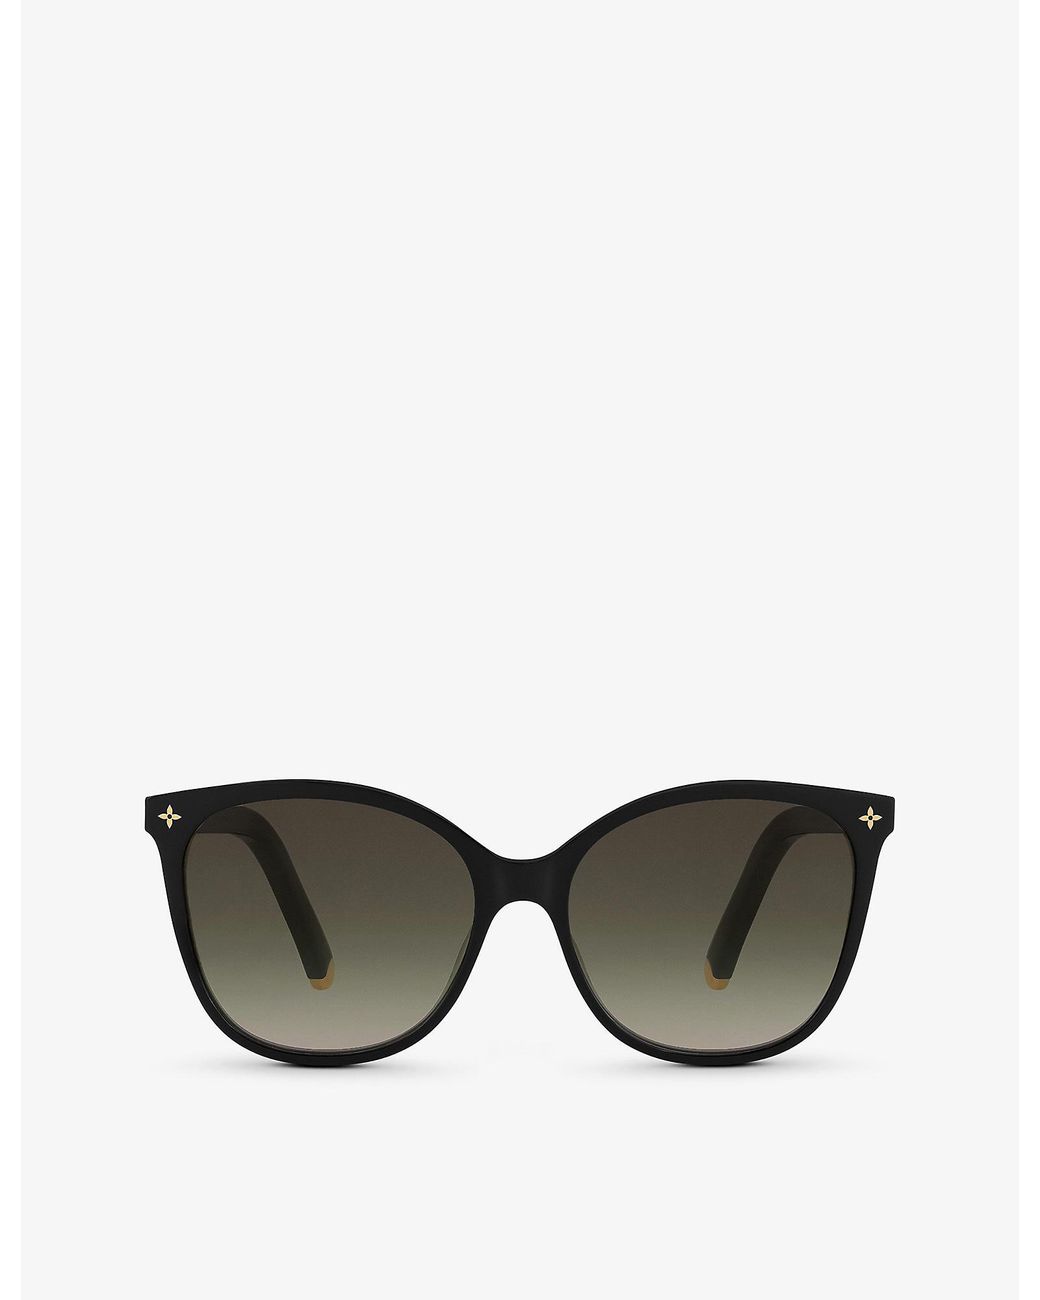 Louis Vuitton womens Lunettes de Soleil sunglasses